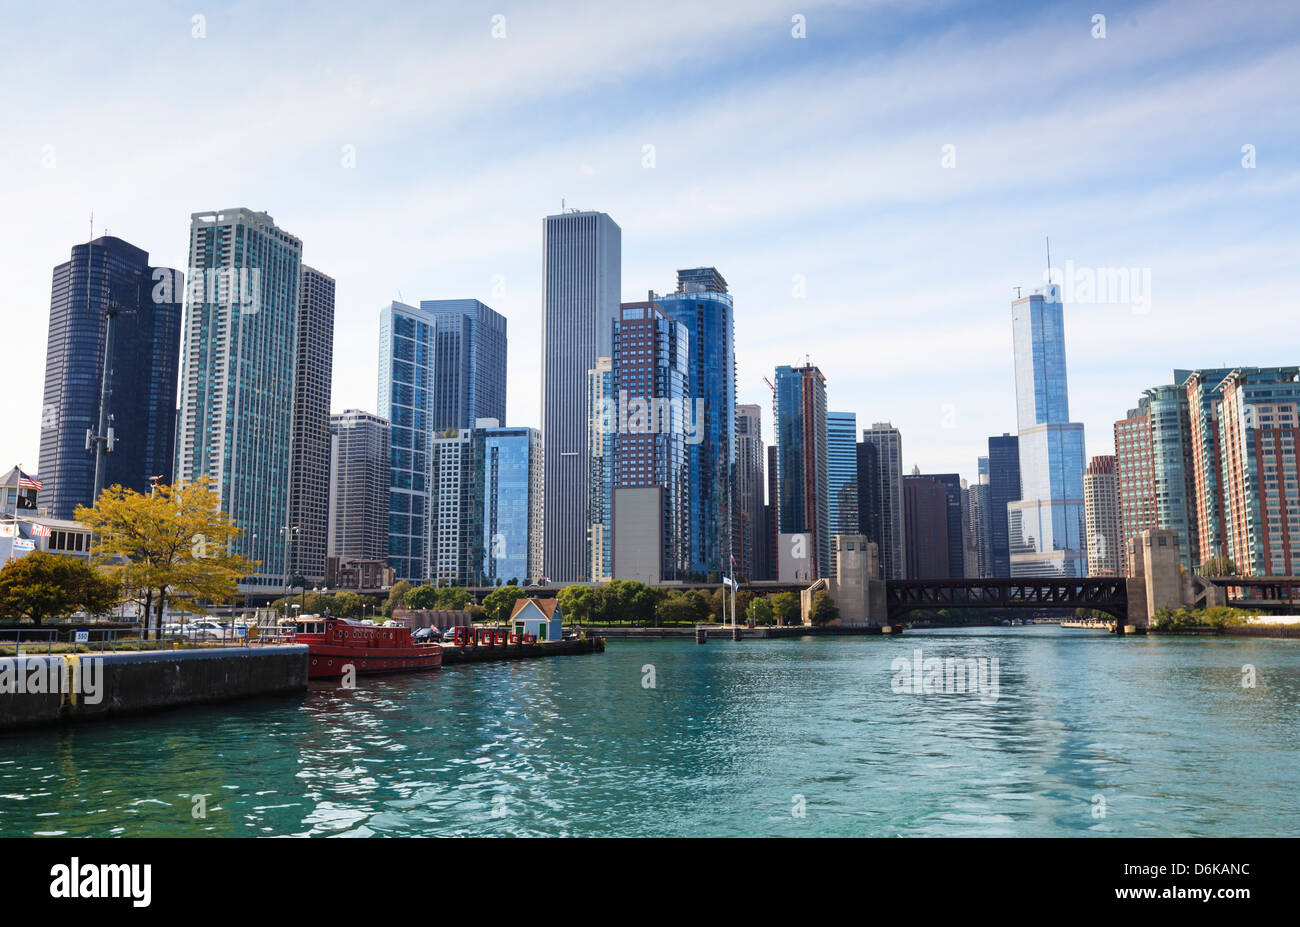 Skyline der Stadt vom Chicago River, Chicago, Illinois, Vereinigte Staaten von Amerika, Nordamerika Stockfoto